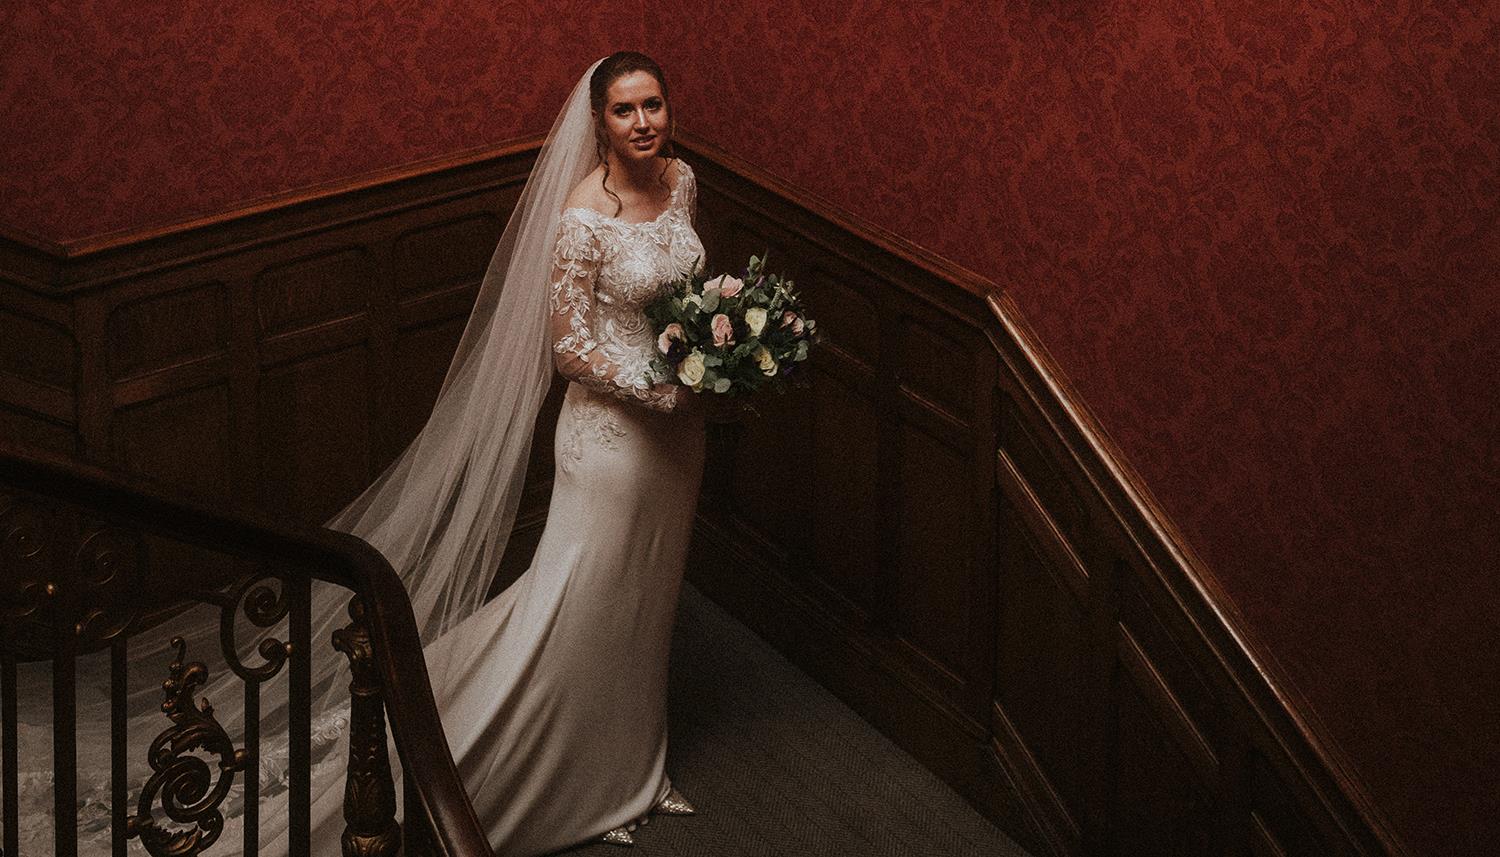 Bride descending stairs. Photo Credit: Bernadeta Kupiec Photography